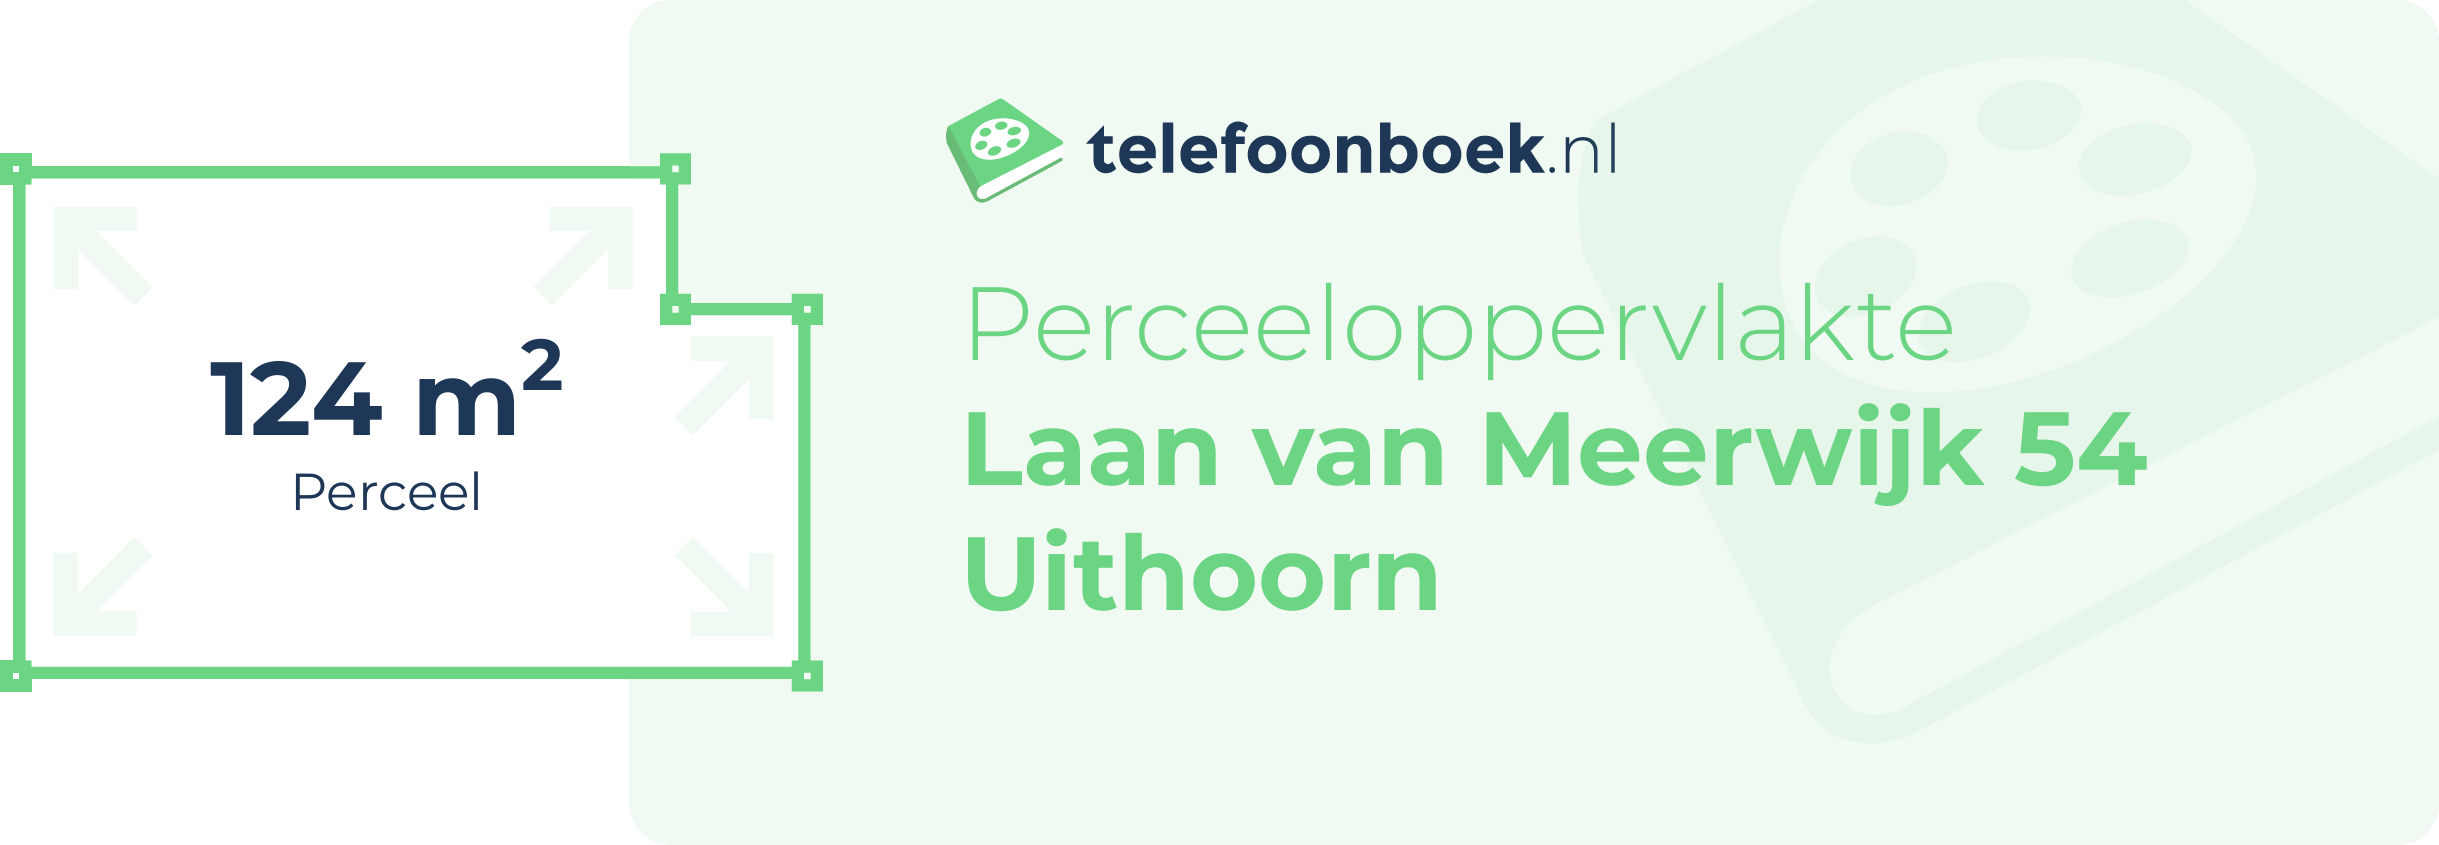 Perceeloppervlakte Laan Van Meerwijk 54 Uithoorn